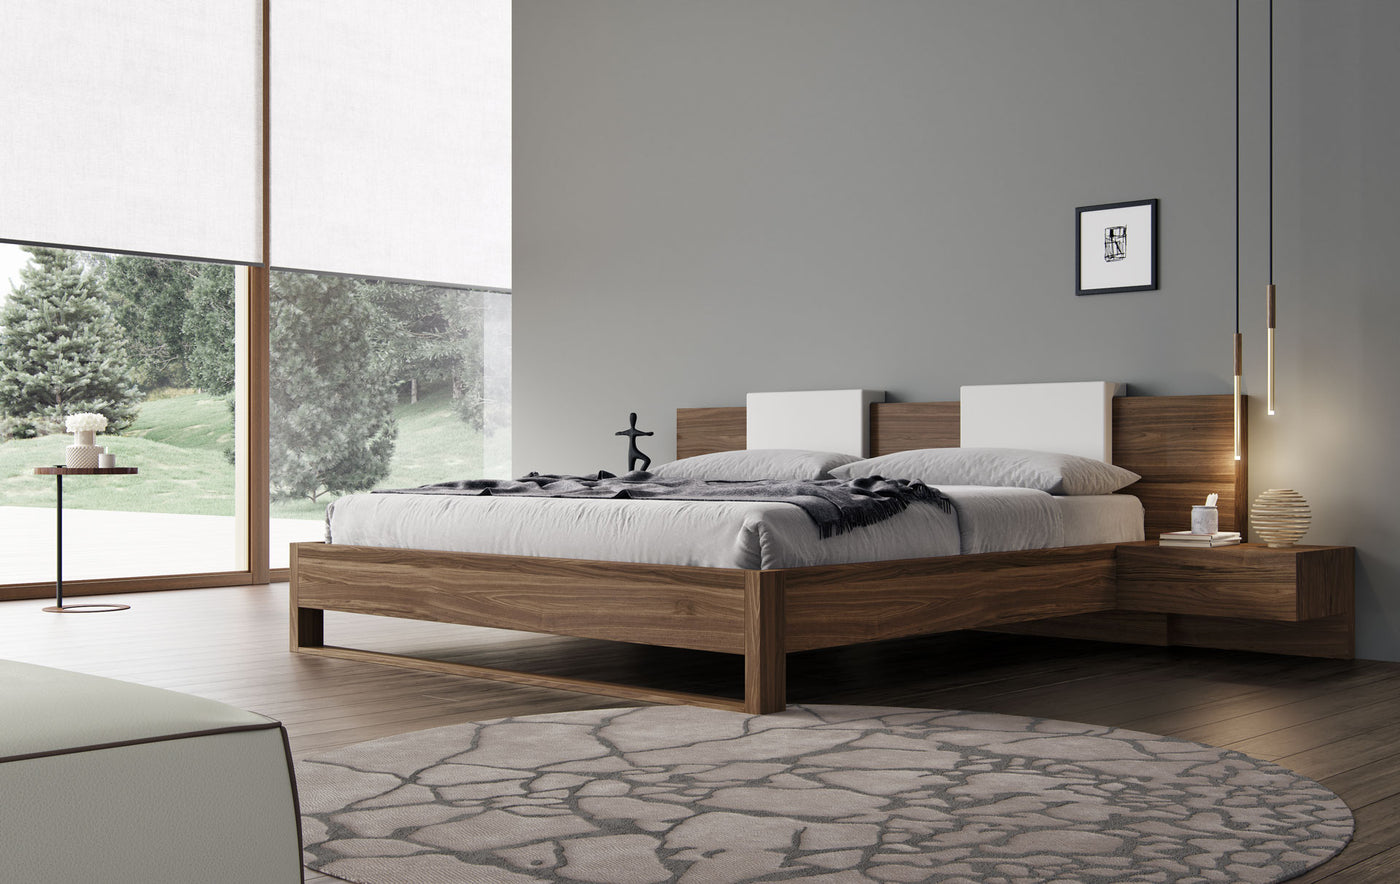 Monroe Bed - Modern Beds by Modloft